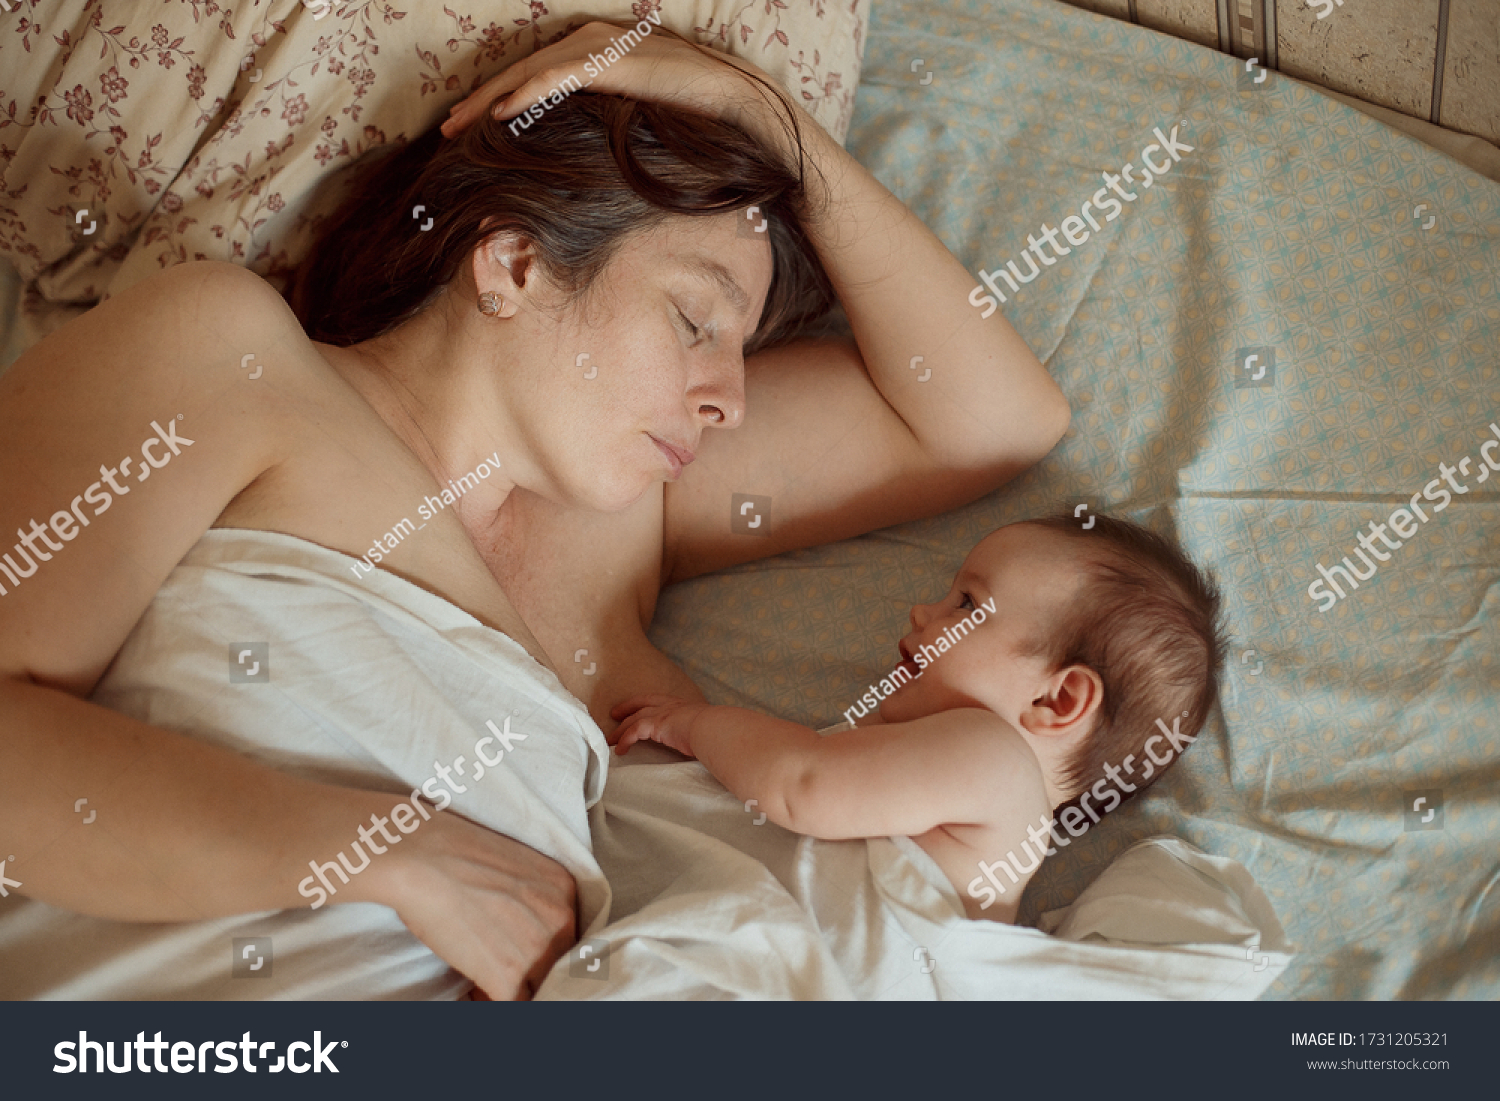 инцест фото мама голая и дети фото 27